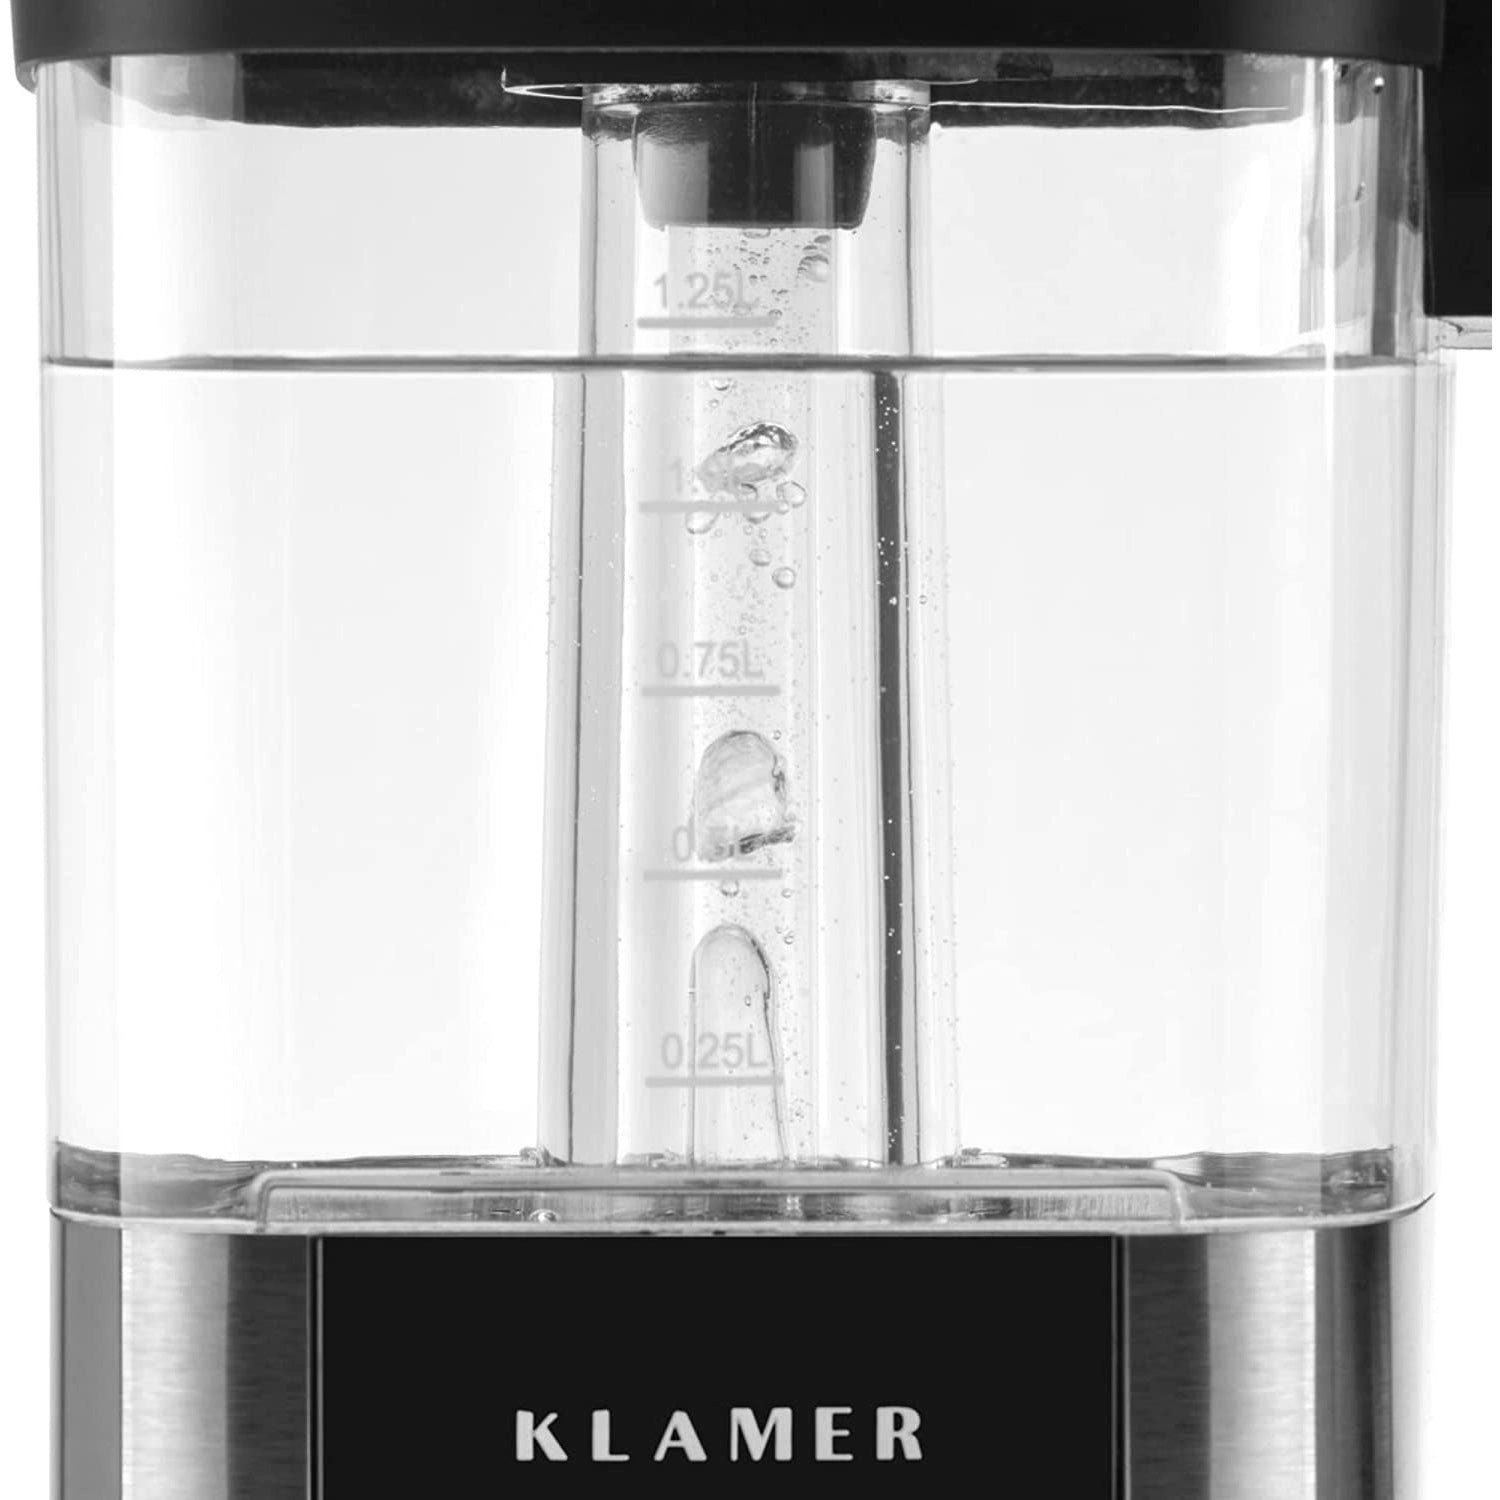 KLAMER Filterkaffeemaschine KLAMER Kaffeemaschine mit mit Glaskanne, Fassung… Kaffeebereiter 1,25L